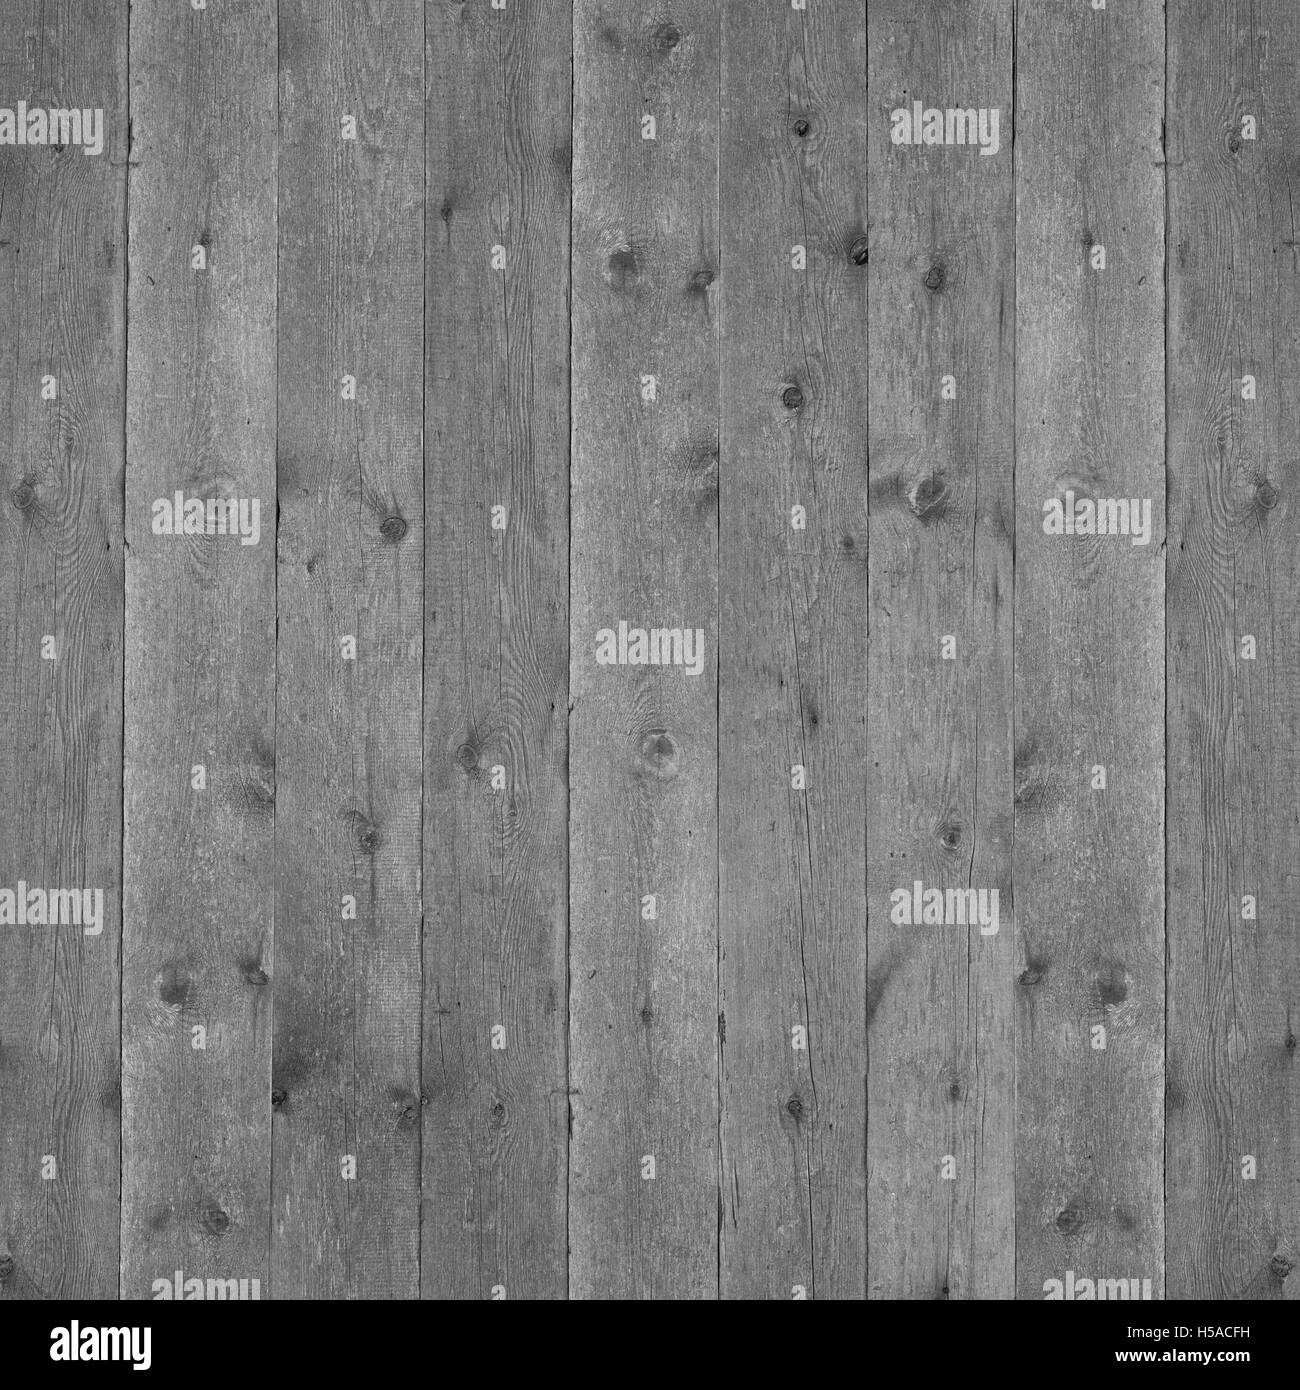 La texture en bois gris ou wood grain pattern background Banque D'Images